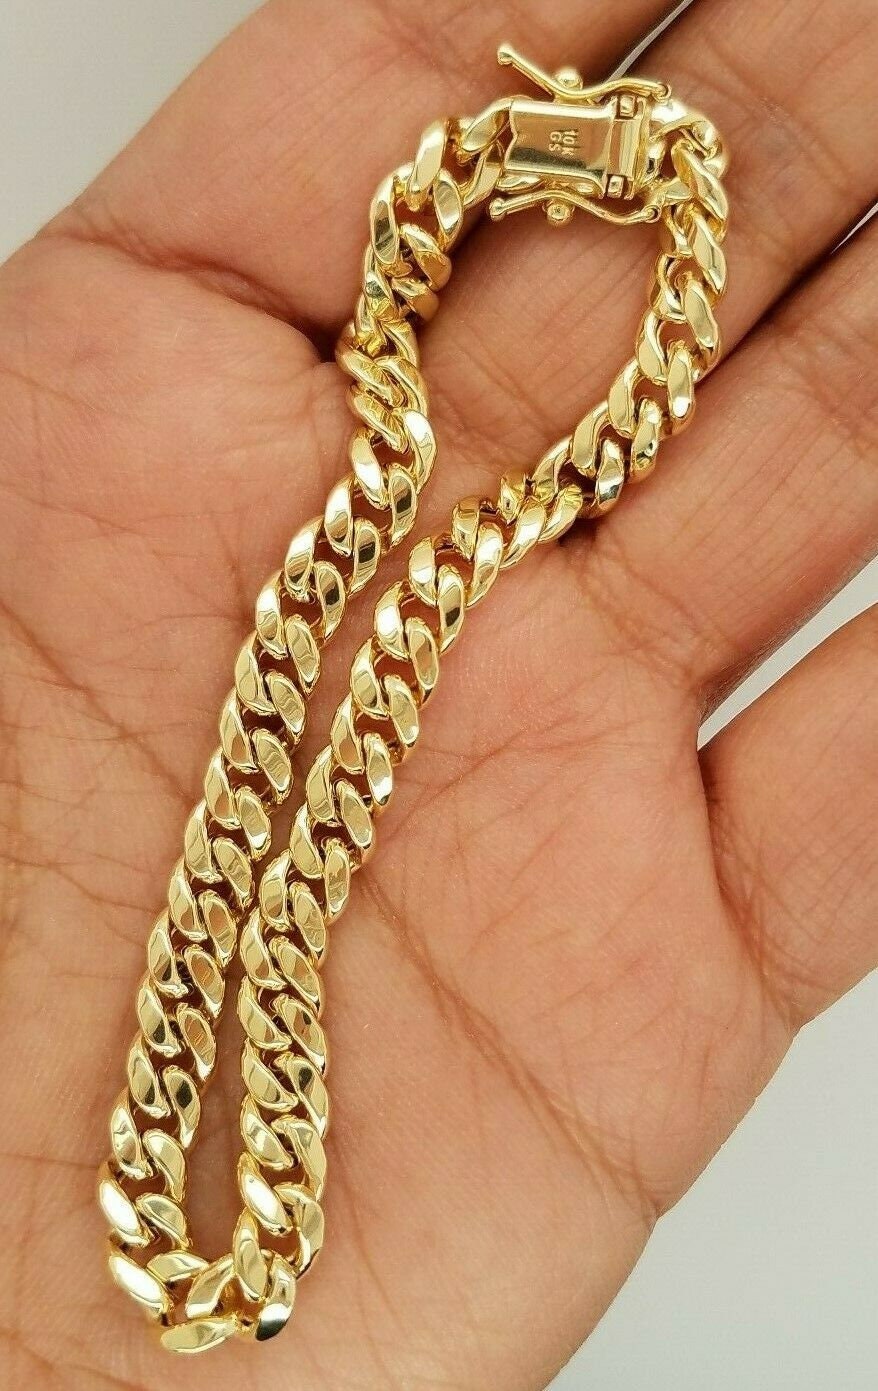 Buy Stainless Steel Bracelet Men & Women, 6mm 8mm Cuban Link Bracelet,  Heavy Curb Charm Bracelet, Chunky Twist Chain Bracelet Online in India -  Etsy